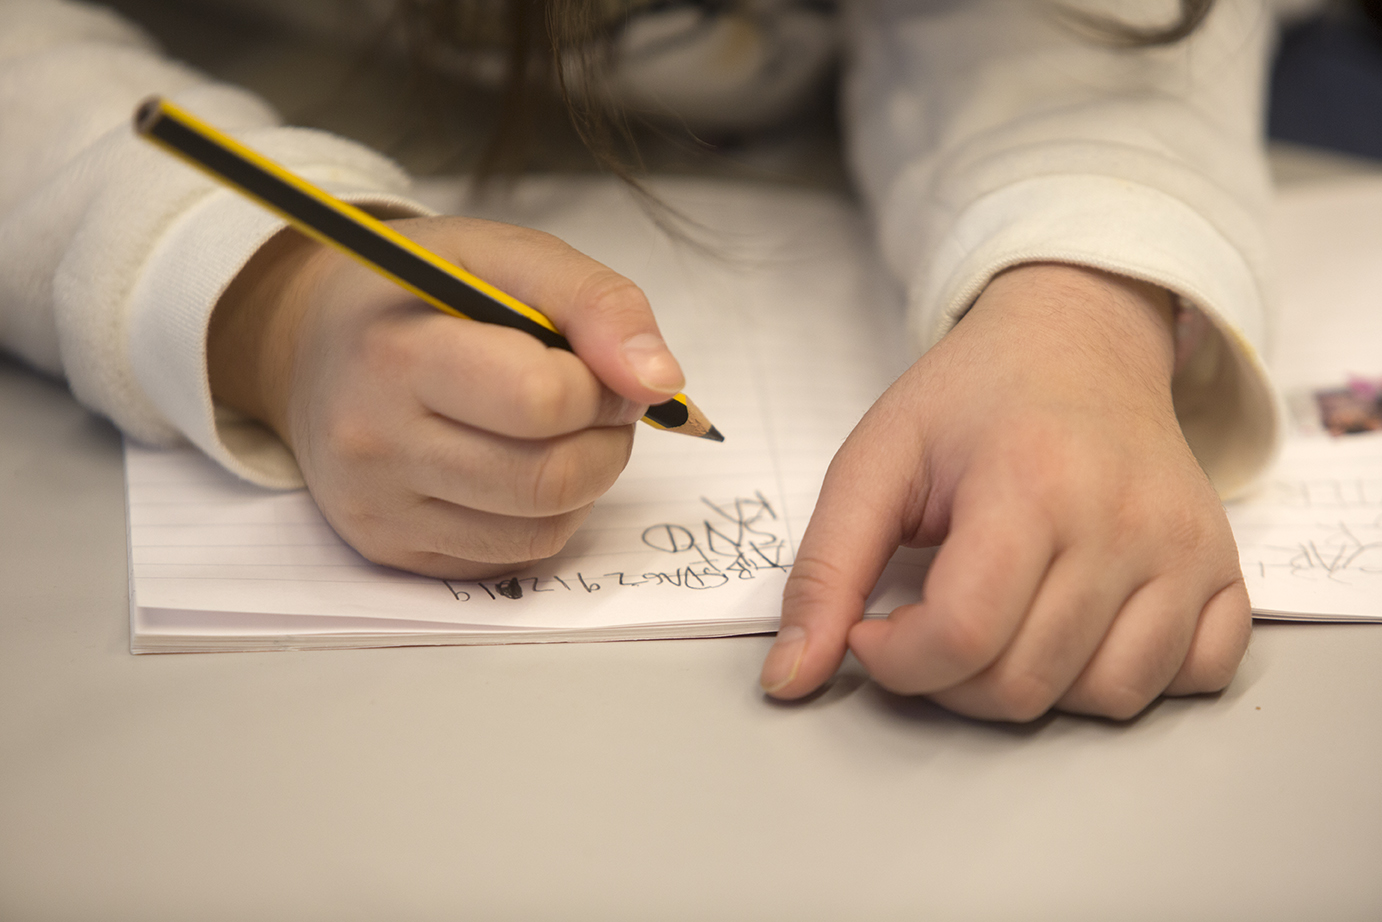 Bilde viser to barnehender og en notatblokk. Holder i en blyant og skriver på notatblokken ©NAKU